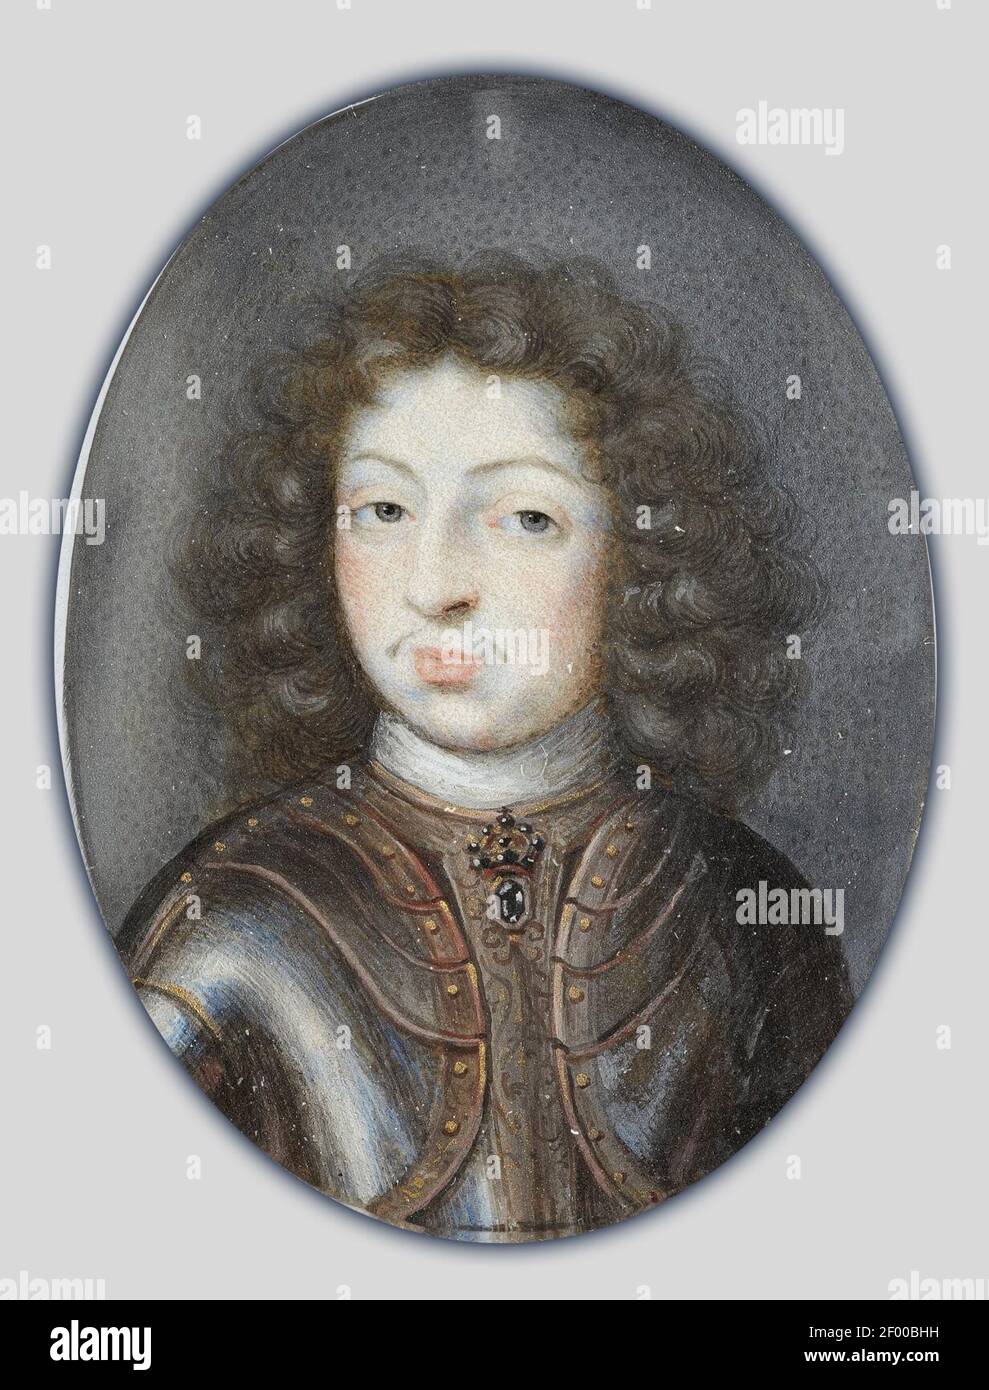 Pierre Signac - Miniatura retrato de Carlos XI, Rey de Suecia 1660-1697 Foto de stock